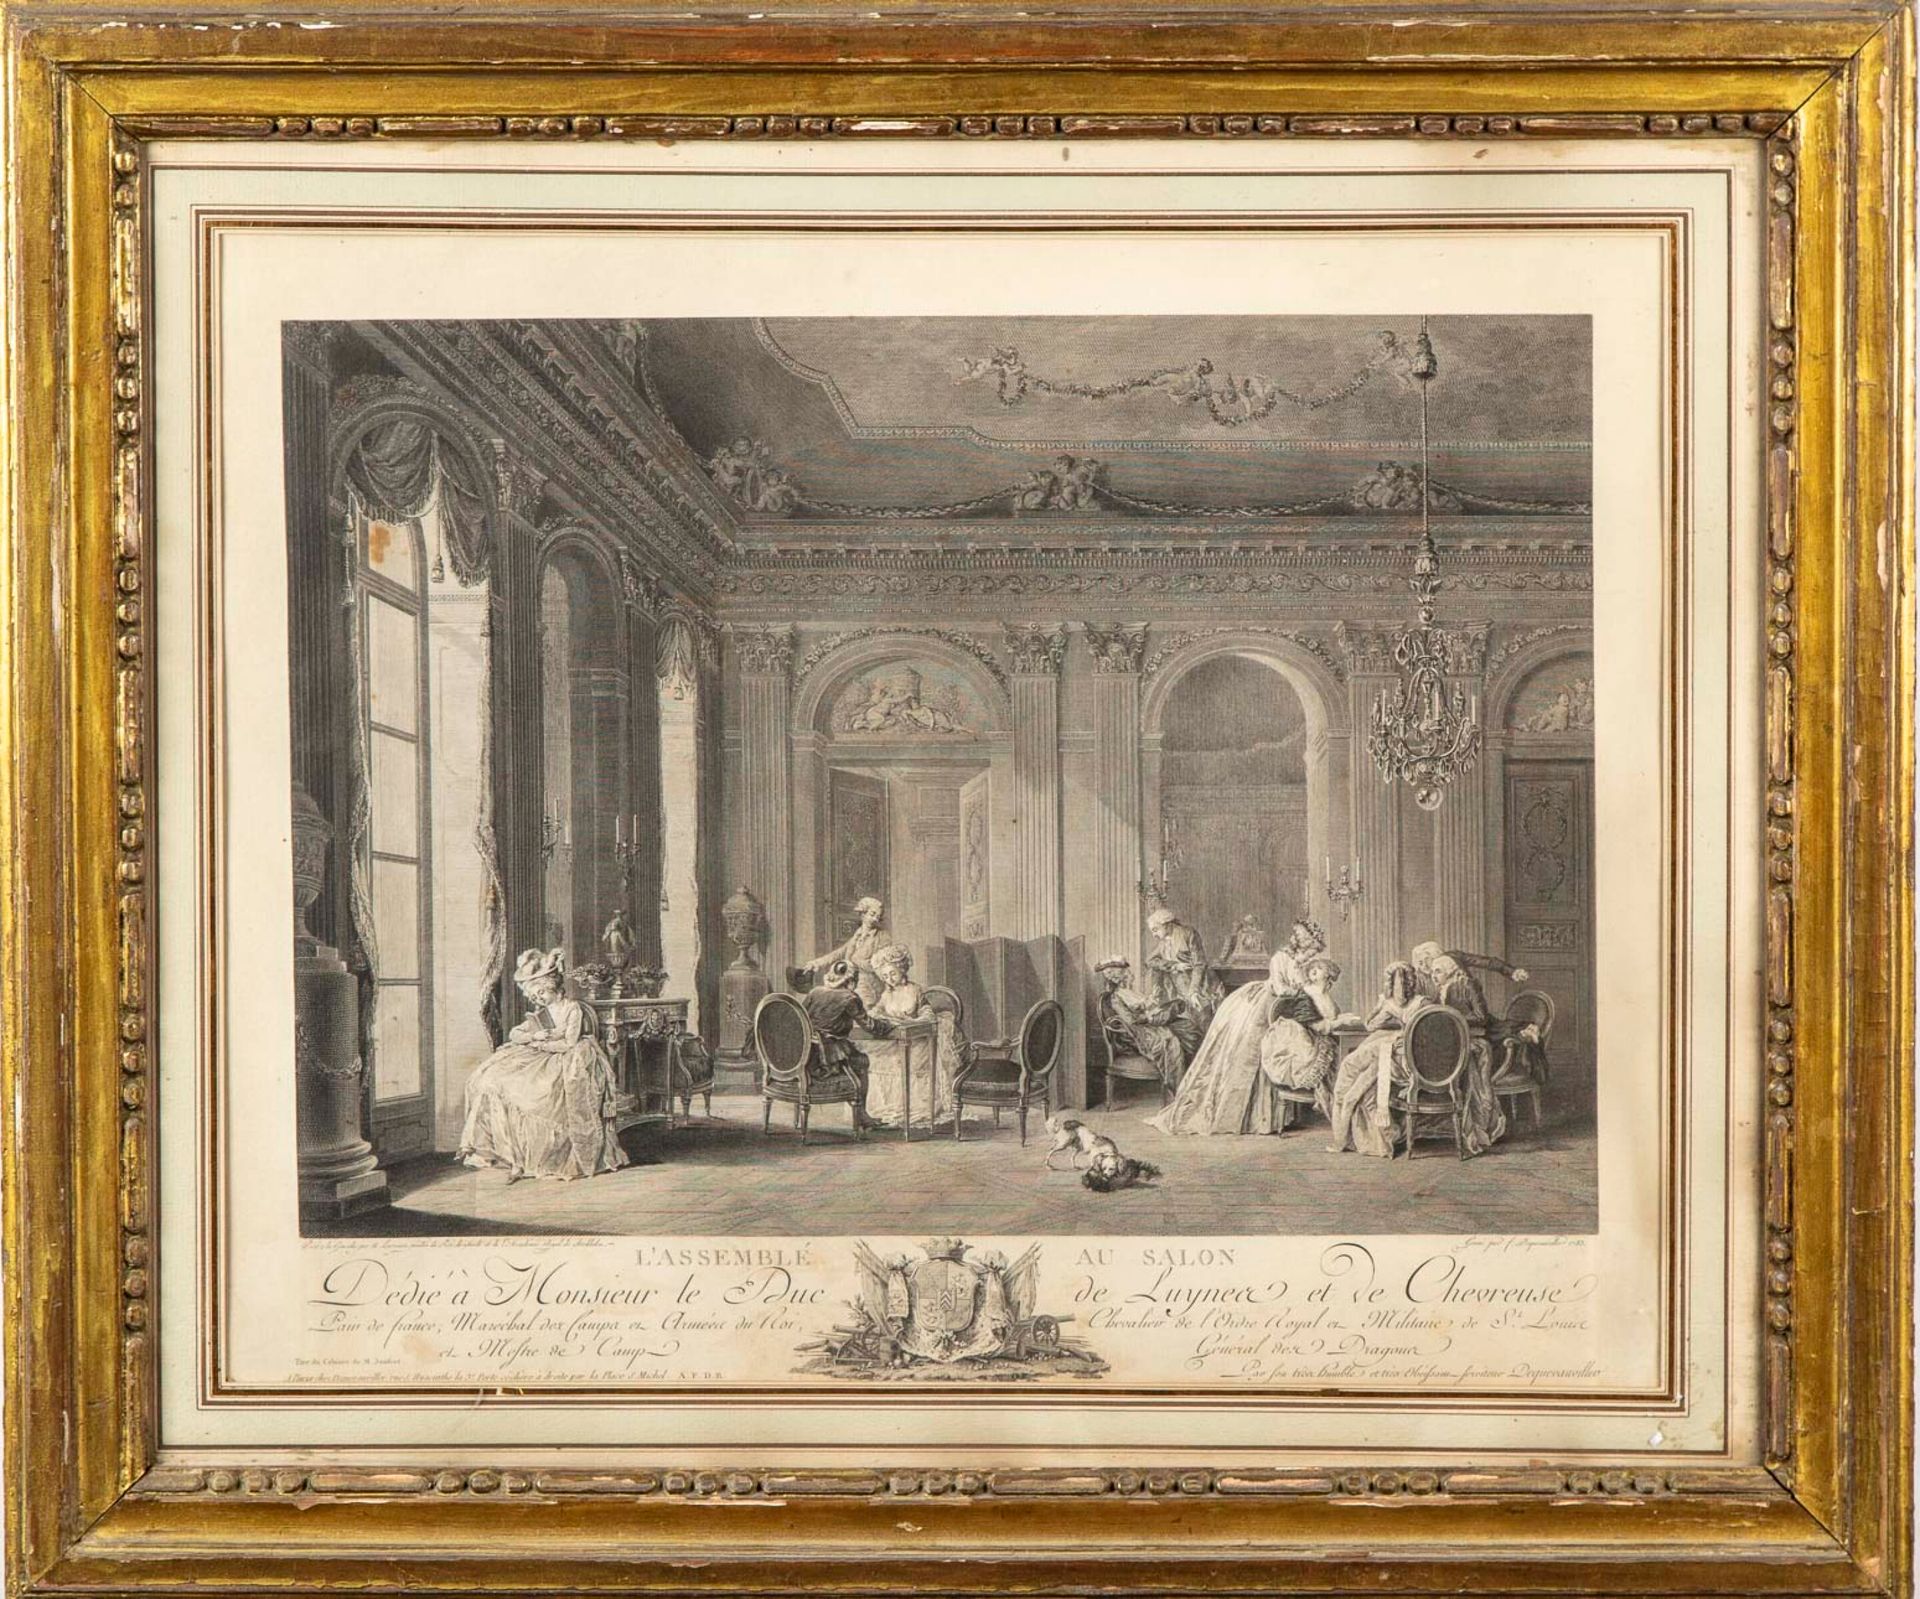 LAVREINCE Nach Lavreince, gestochen von François Dequevauviller (1745-1817)

Die&hellip;